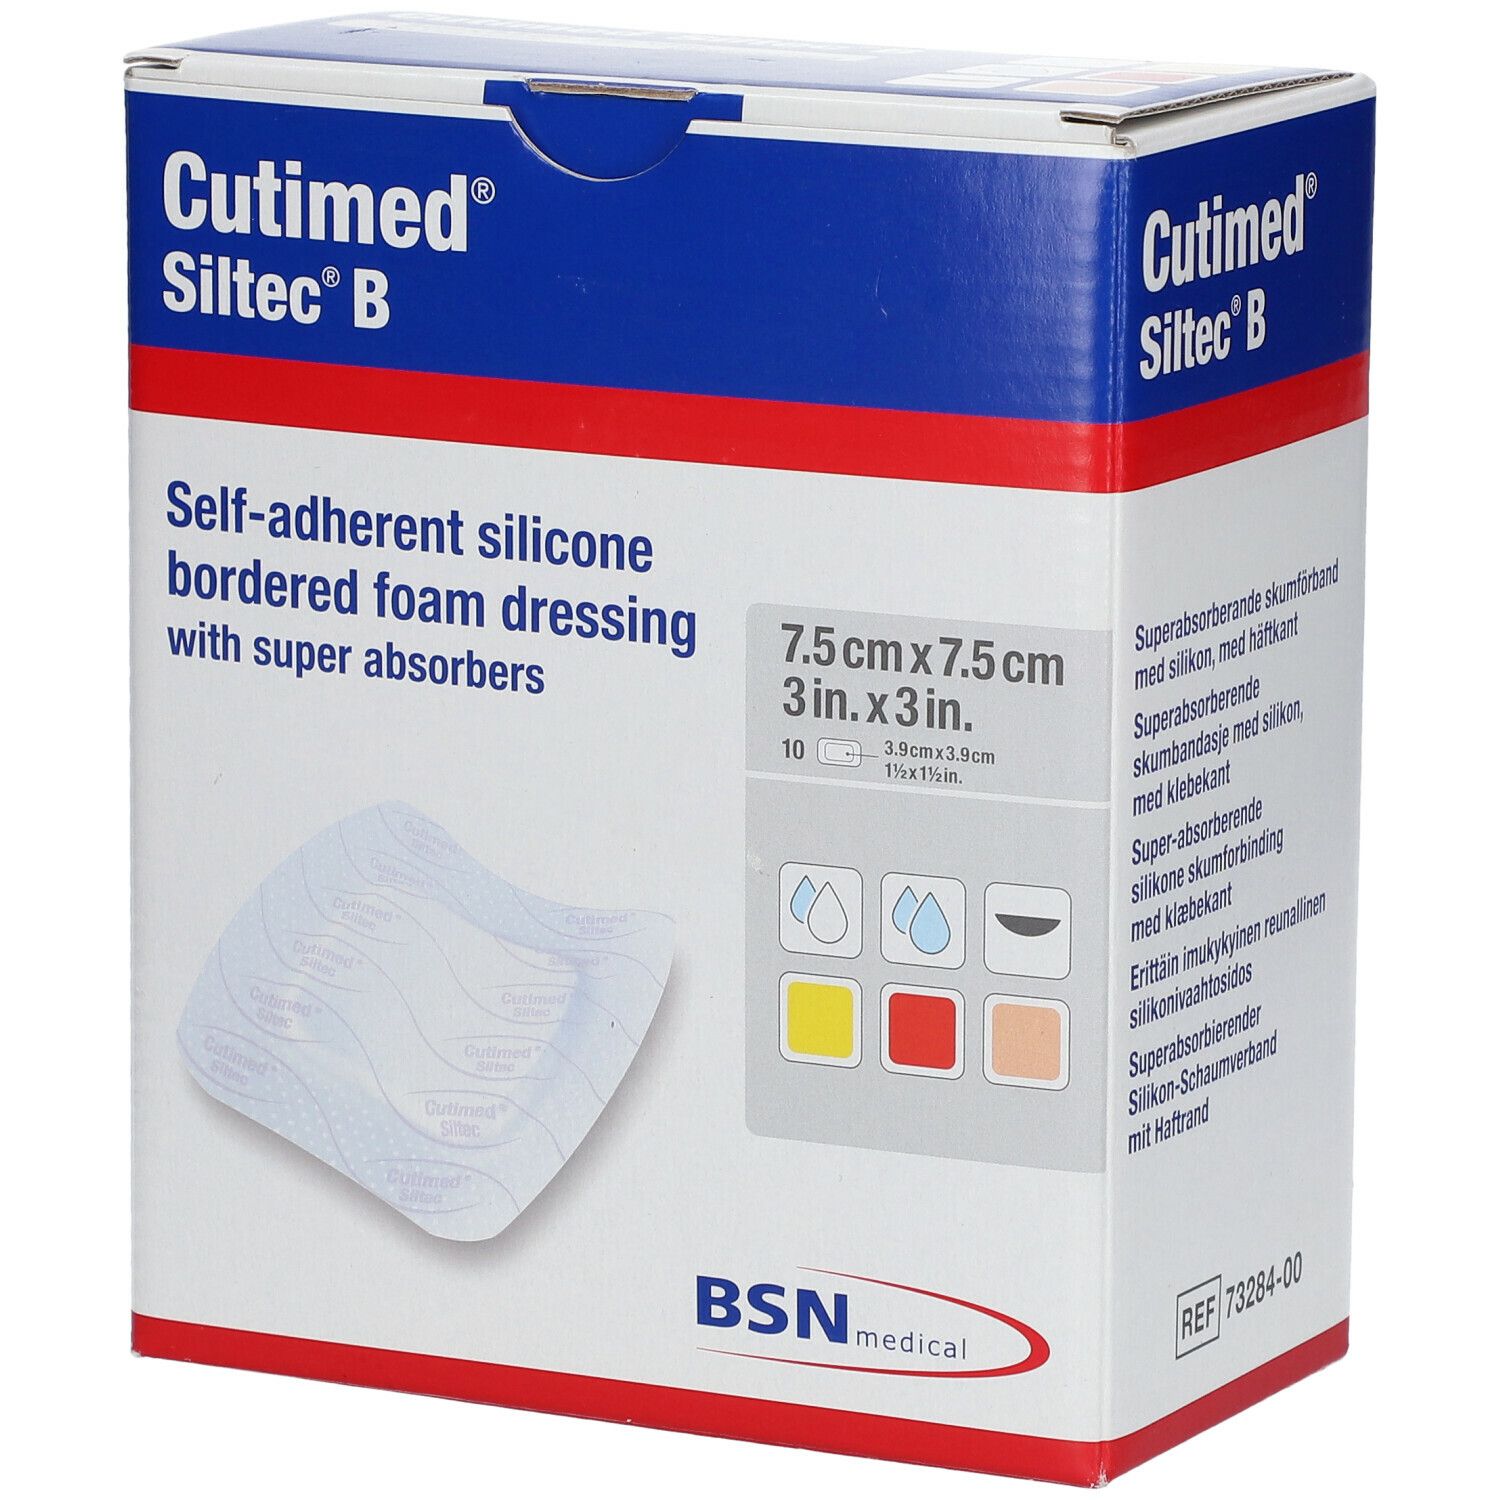 Cutimed® Siltec B 7,5 cm x 7,5 cm